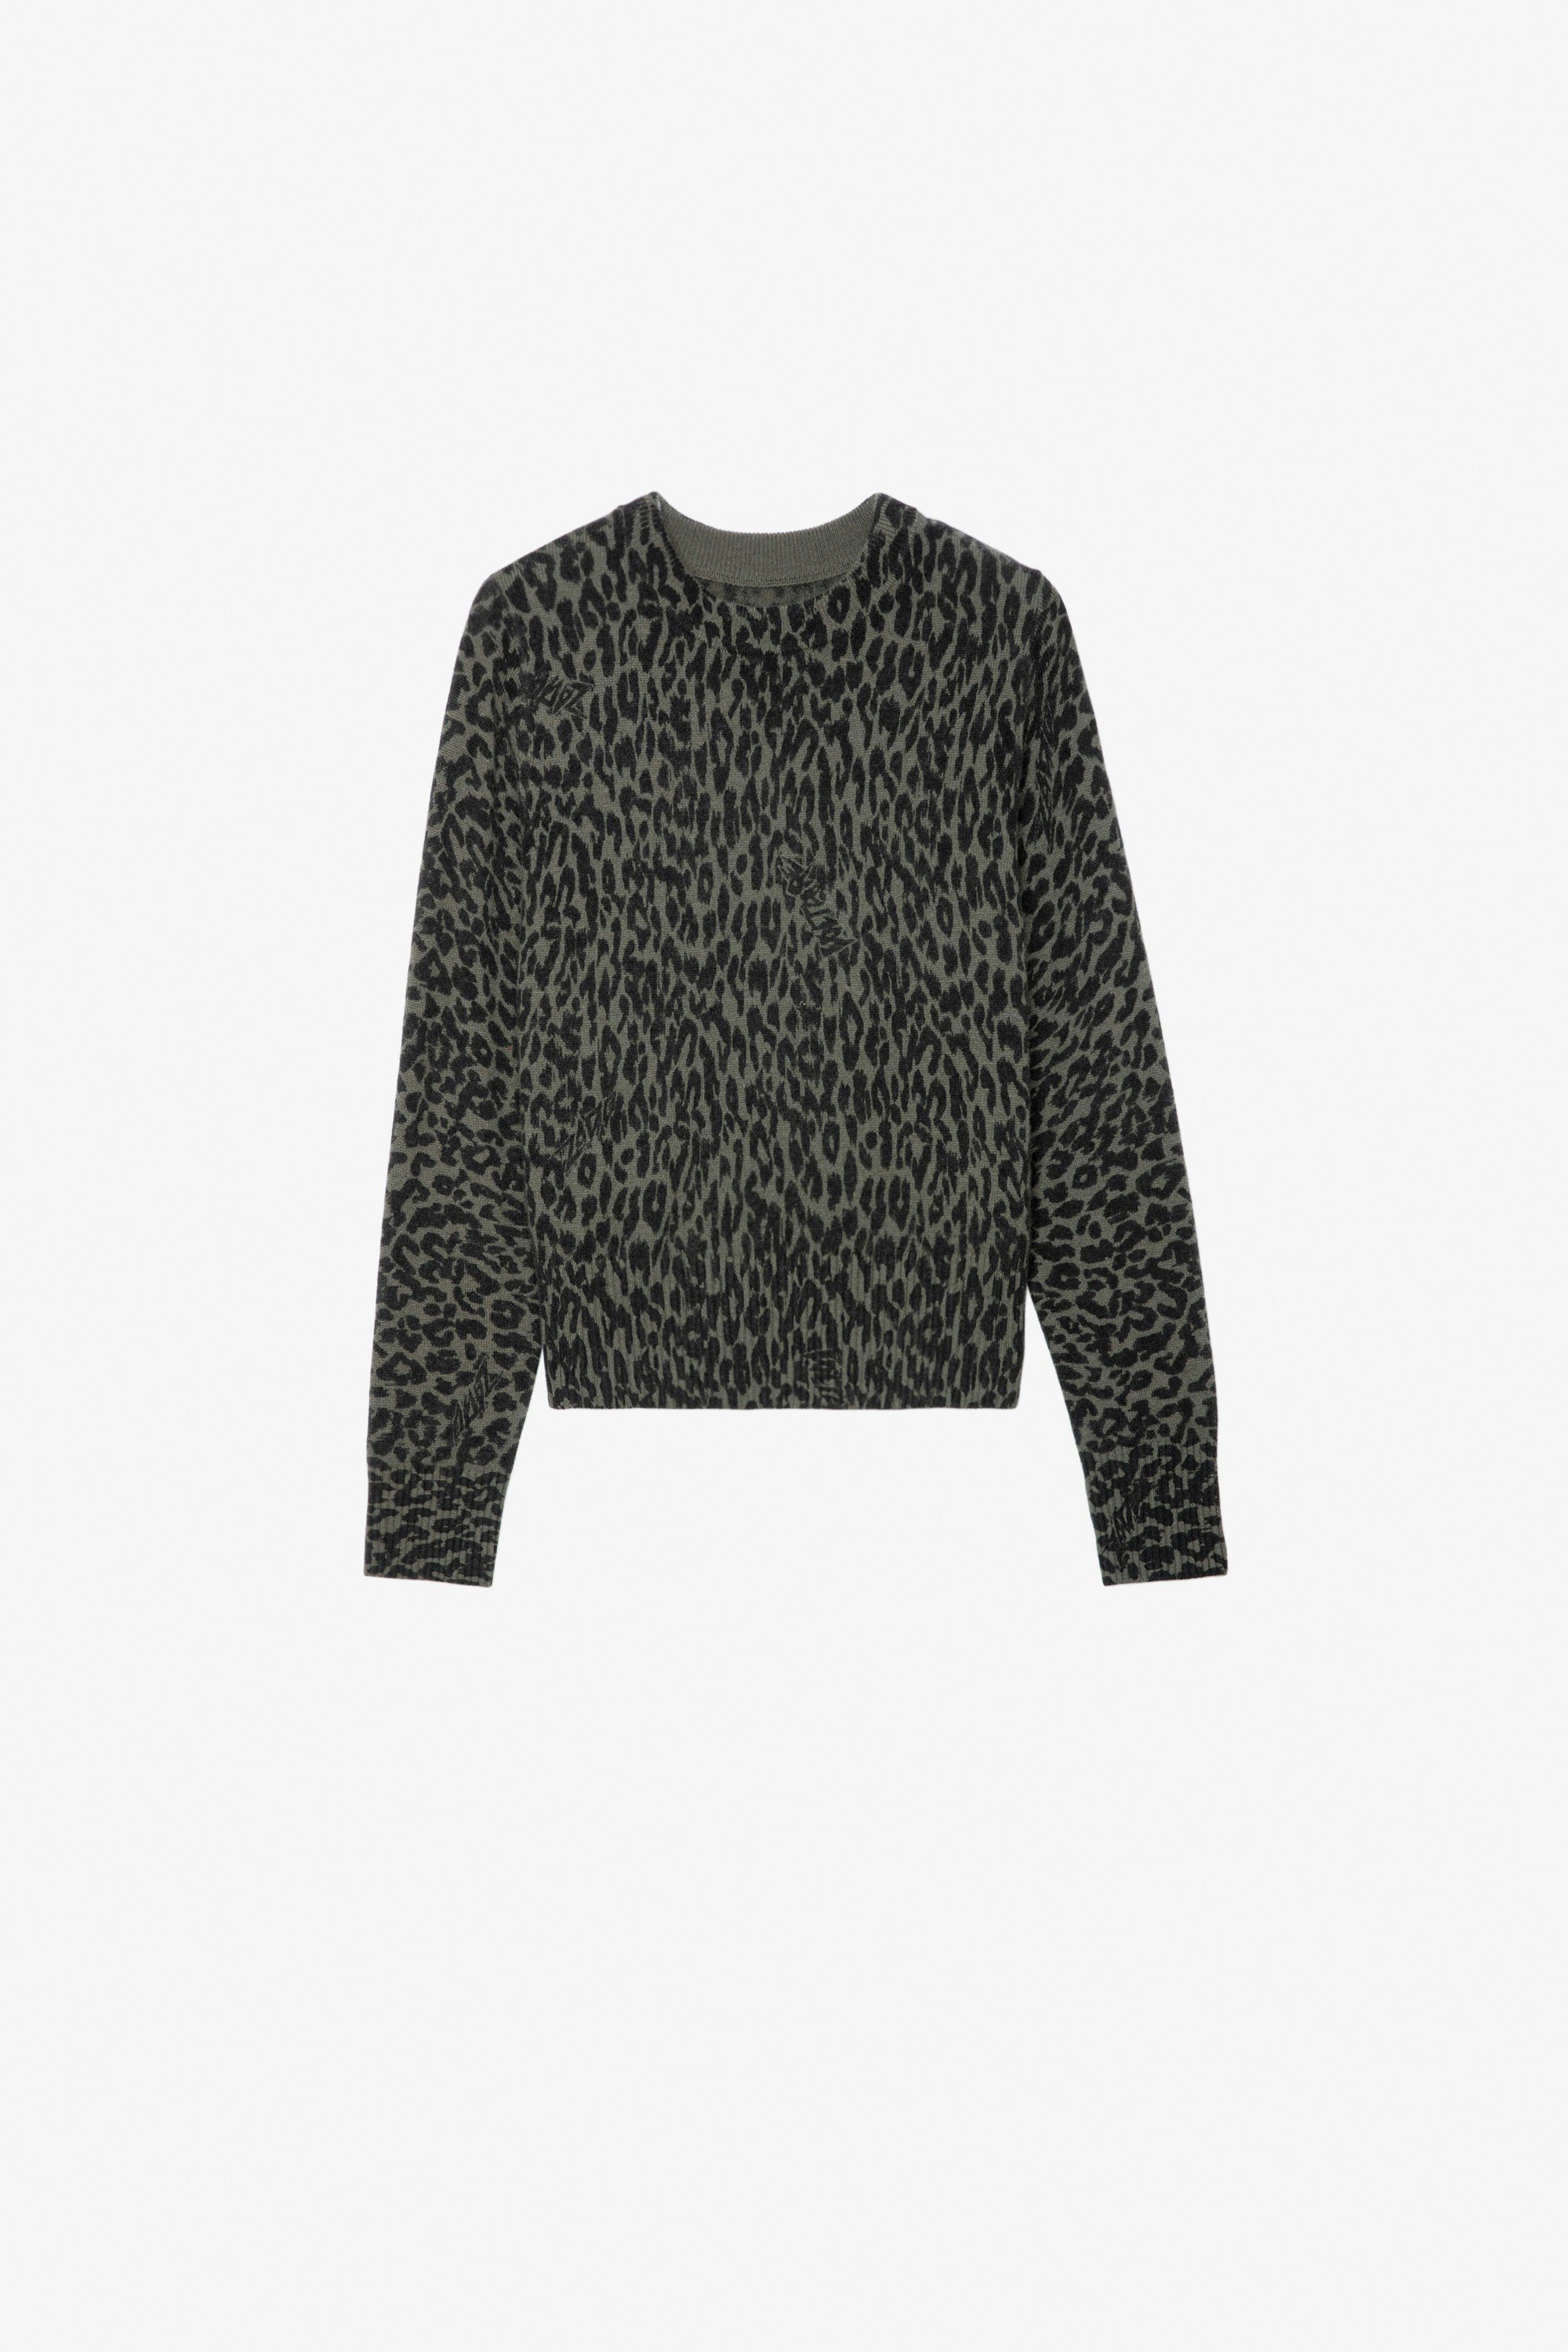 Pullover Reglis für Mädchen - Pullover aus khakifarbenem Strick mit Leoparden-Print für Mädchen.